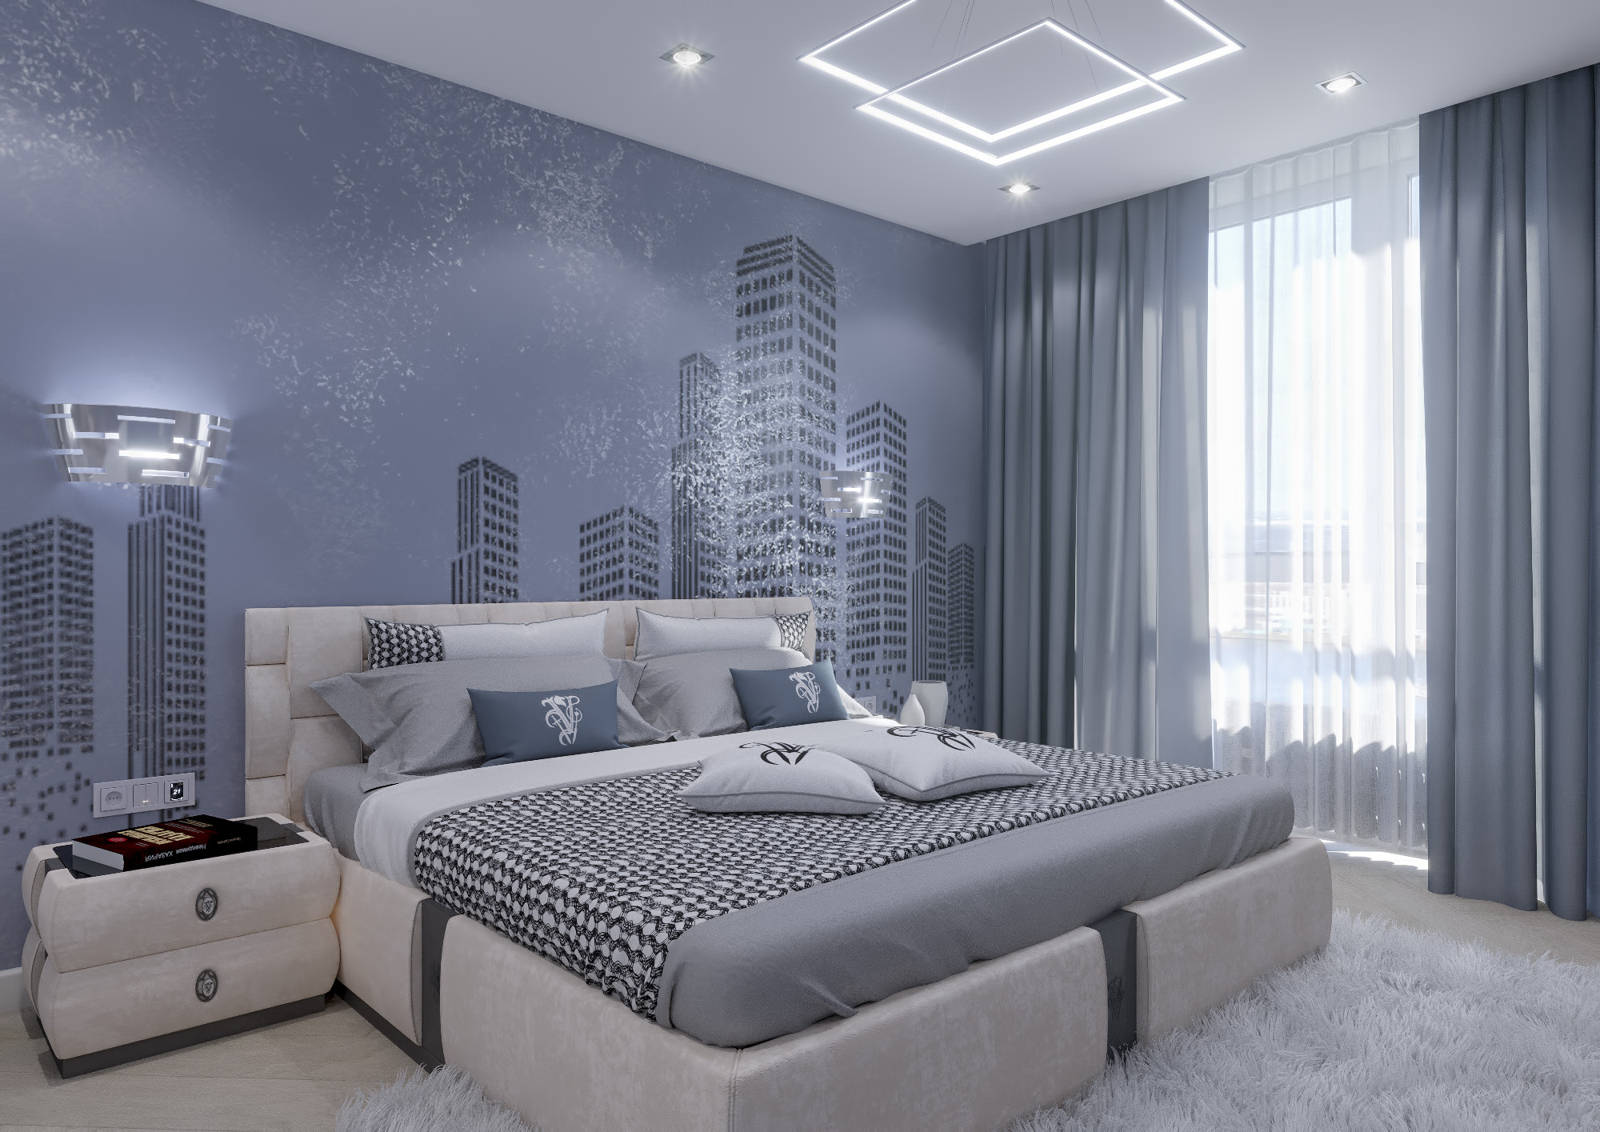 Дизайн спальни Киев карта над кроватью, наклейки на стенах, интерьер скандинавский, современный, лофт